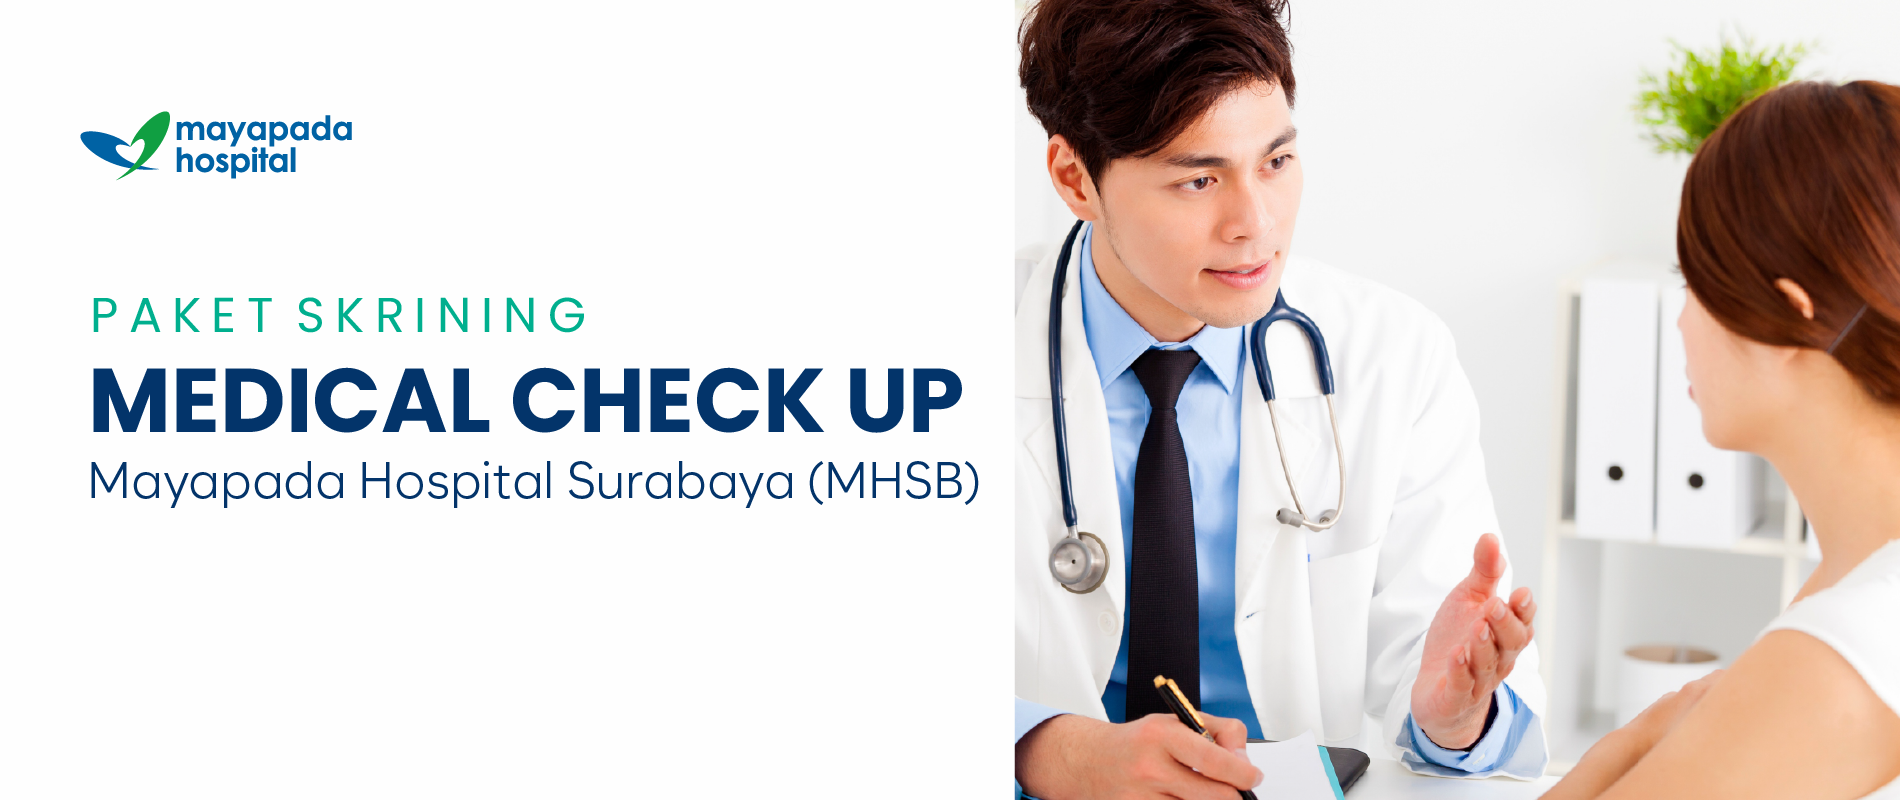 Promo Skrining Medical Check Up Mayapada Hospital Surabaya IMG